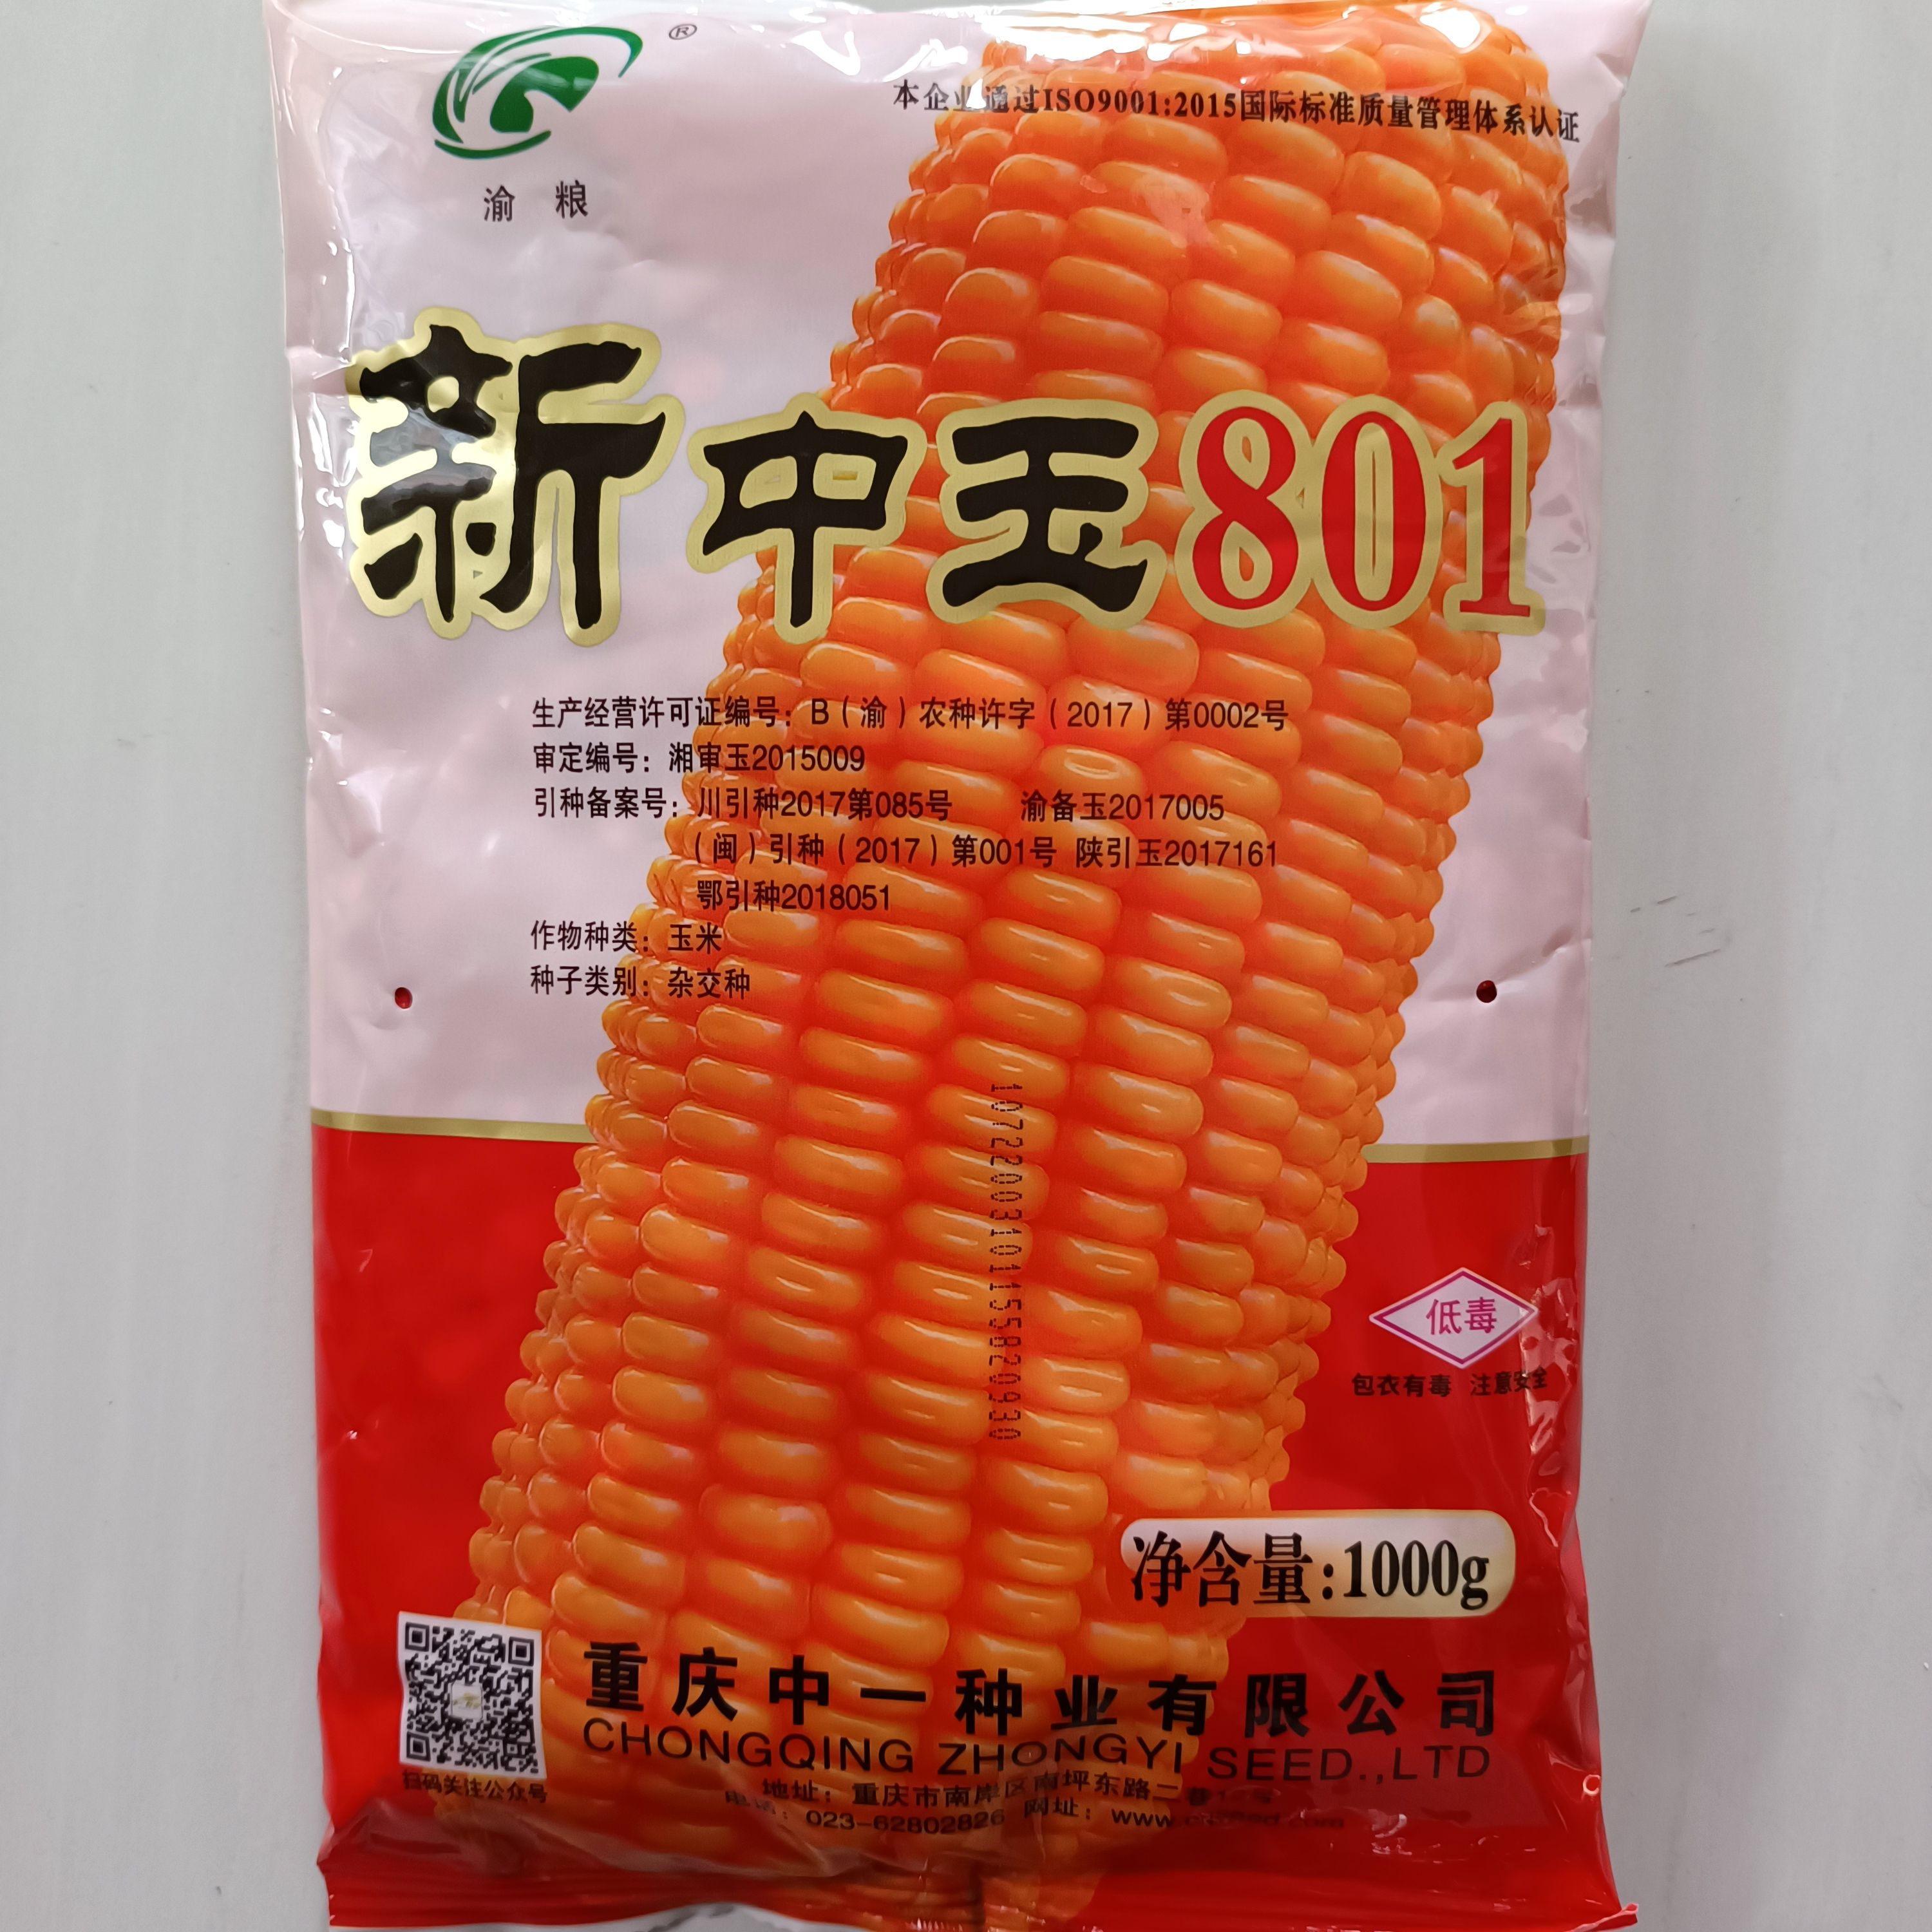 萧县重庆中一种业 新中玉801玉米种子 高产 纯度高